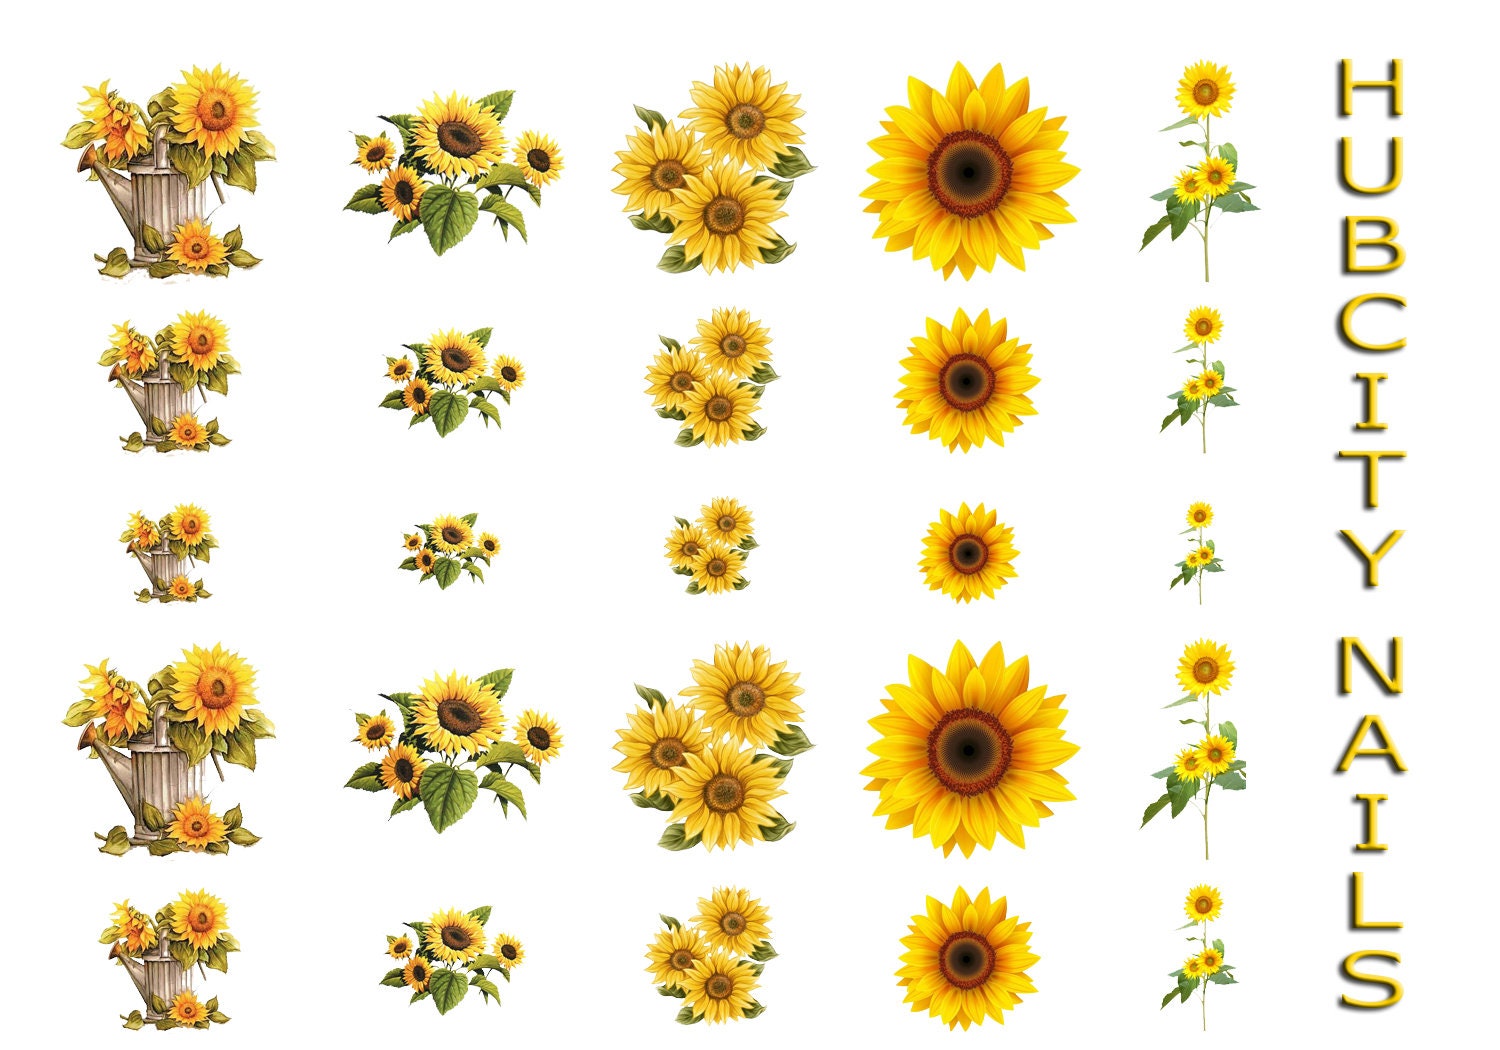 1. Sunflower Nail Art Tutorial - wide 4